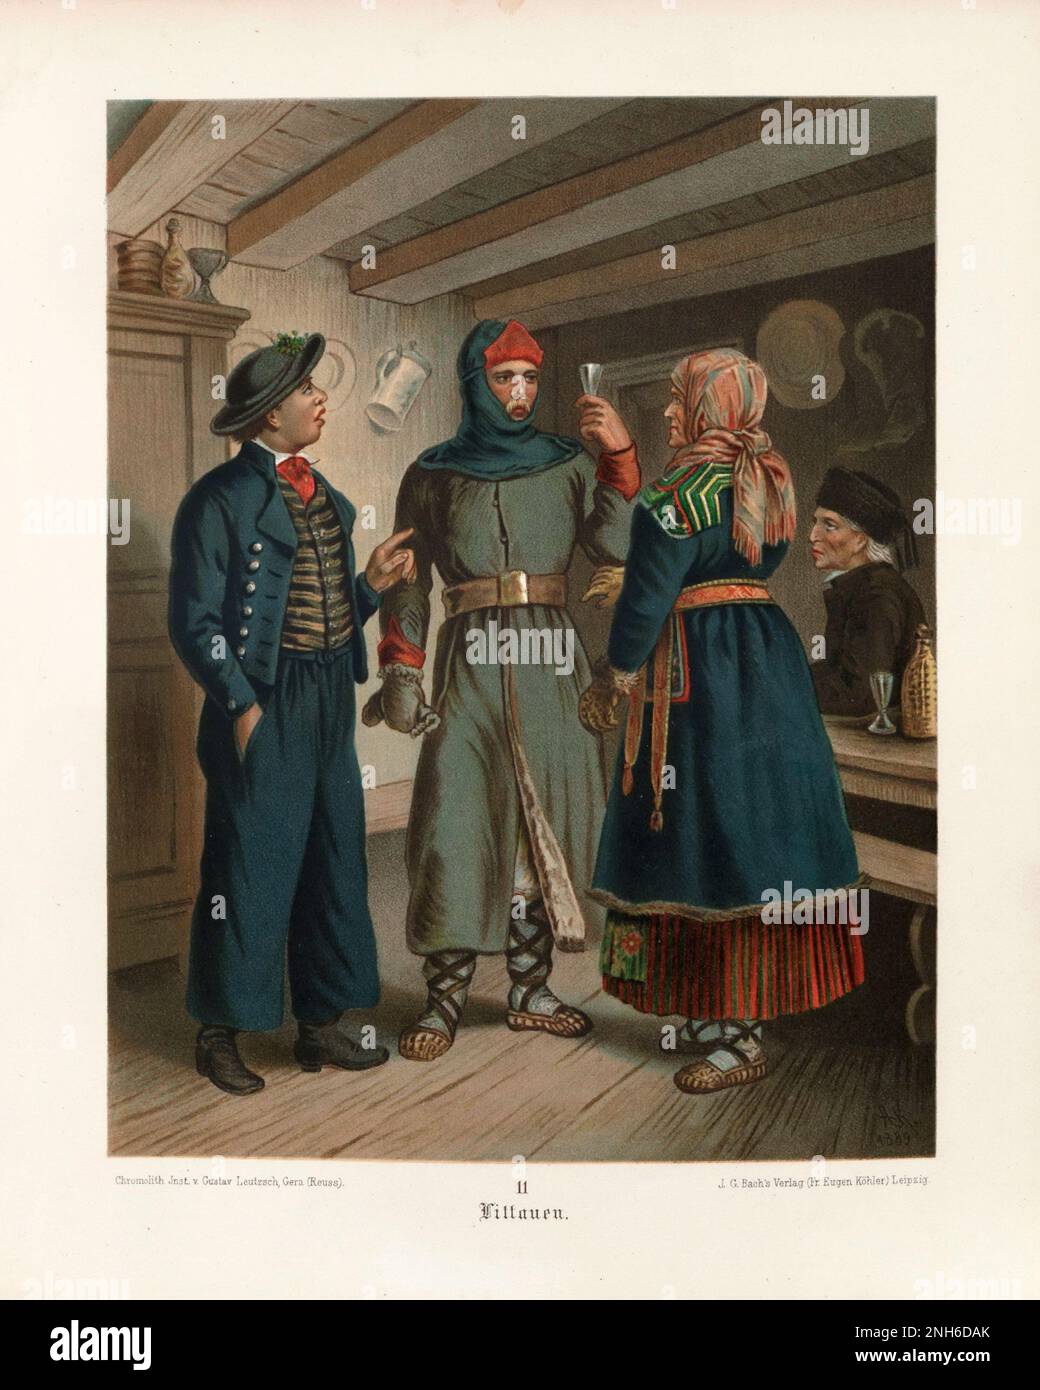 Disfraz folclórico alemán. Lituania (Litauen). litografía del siglo 19th. Foto de stock